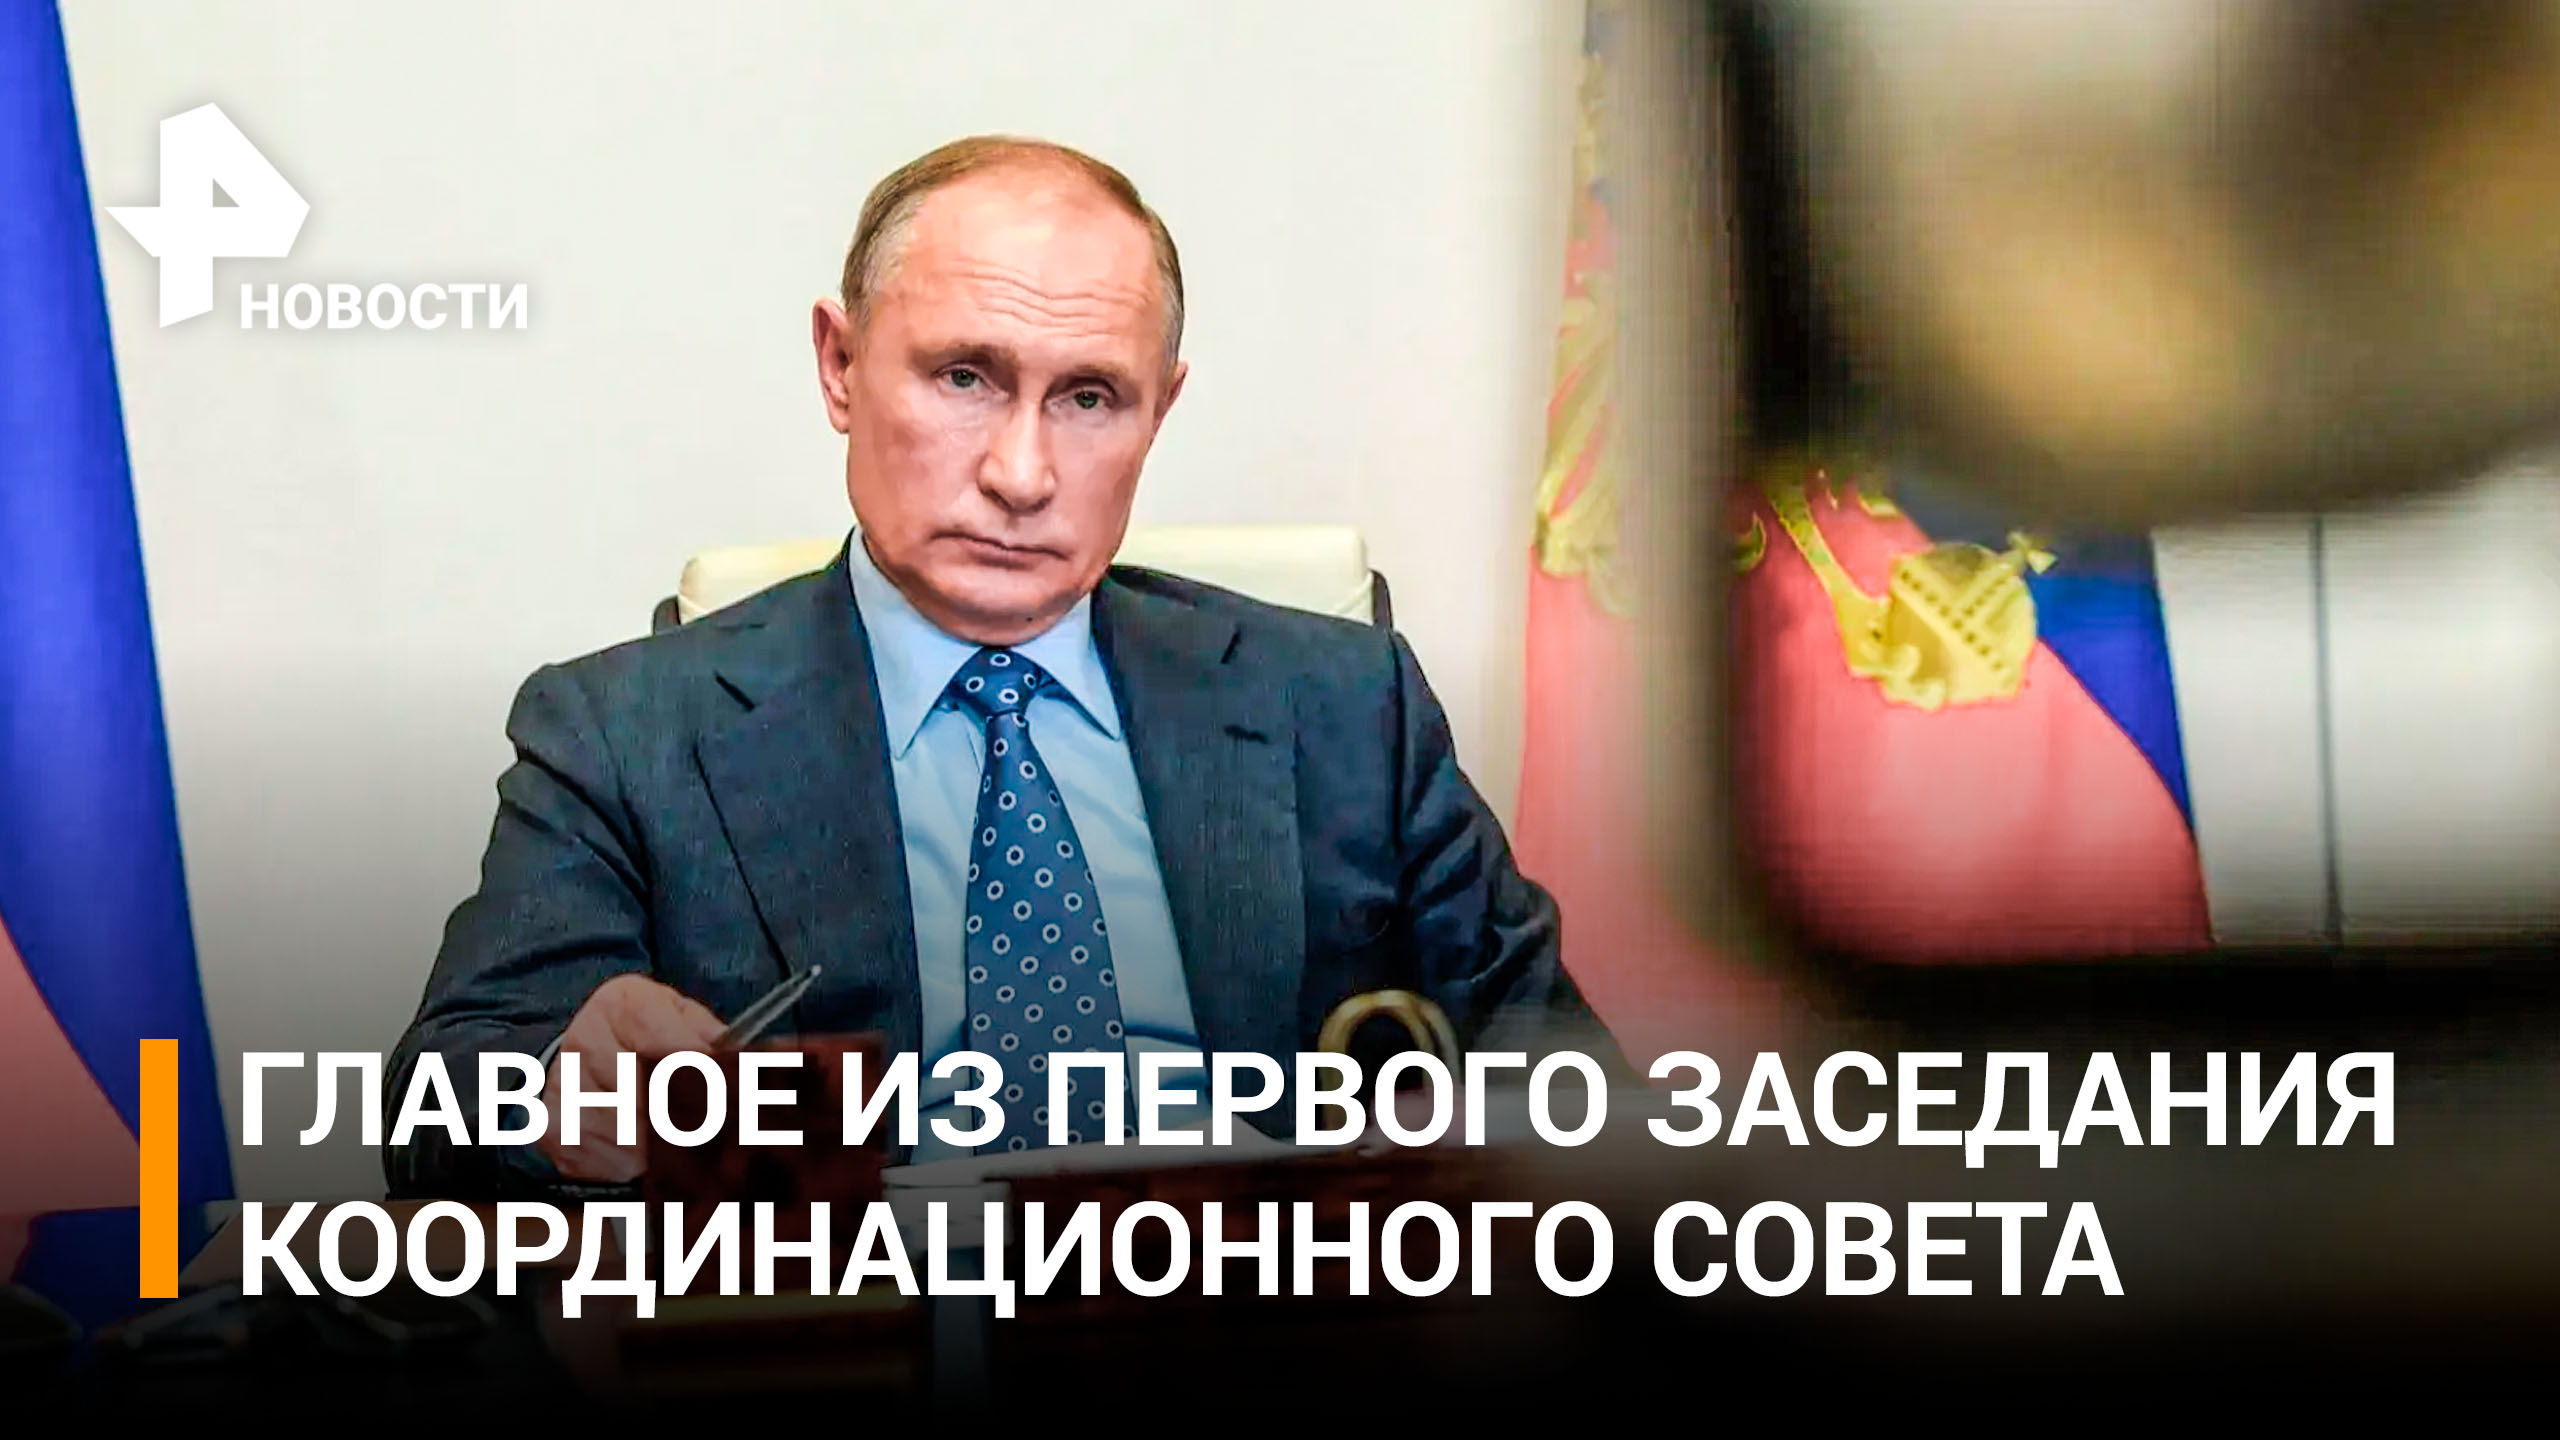 Путин призвал координационный совет к высоким темпам работы в условиях СВО / РЕН Новости